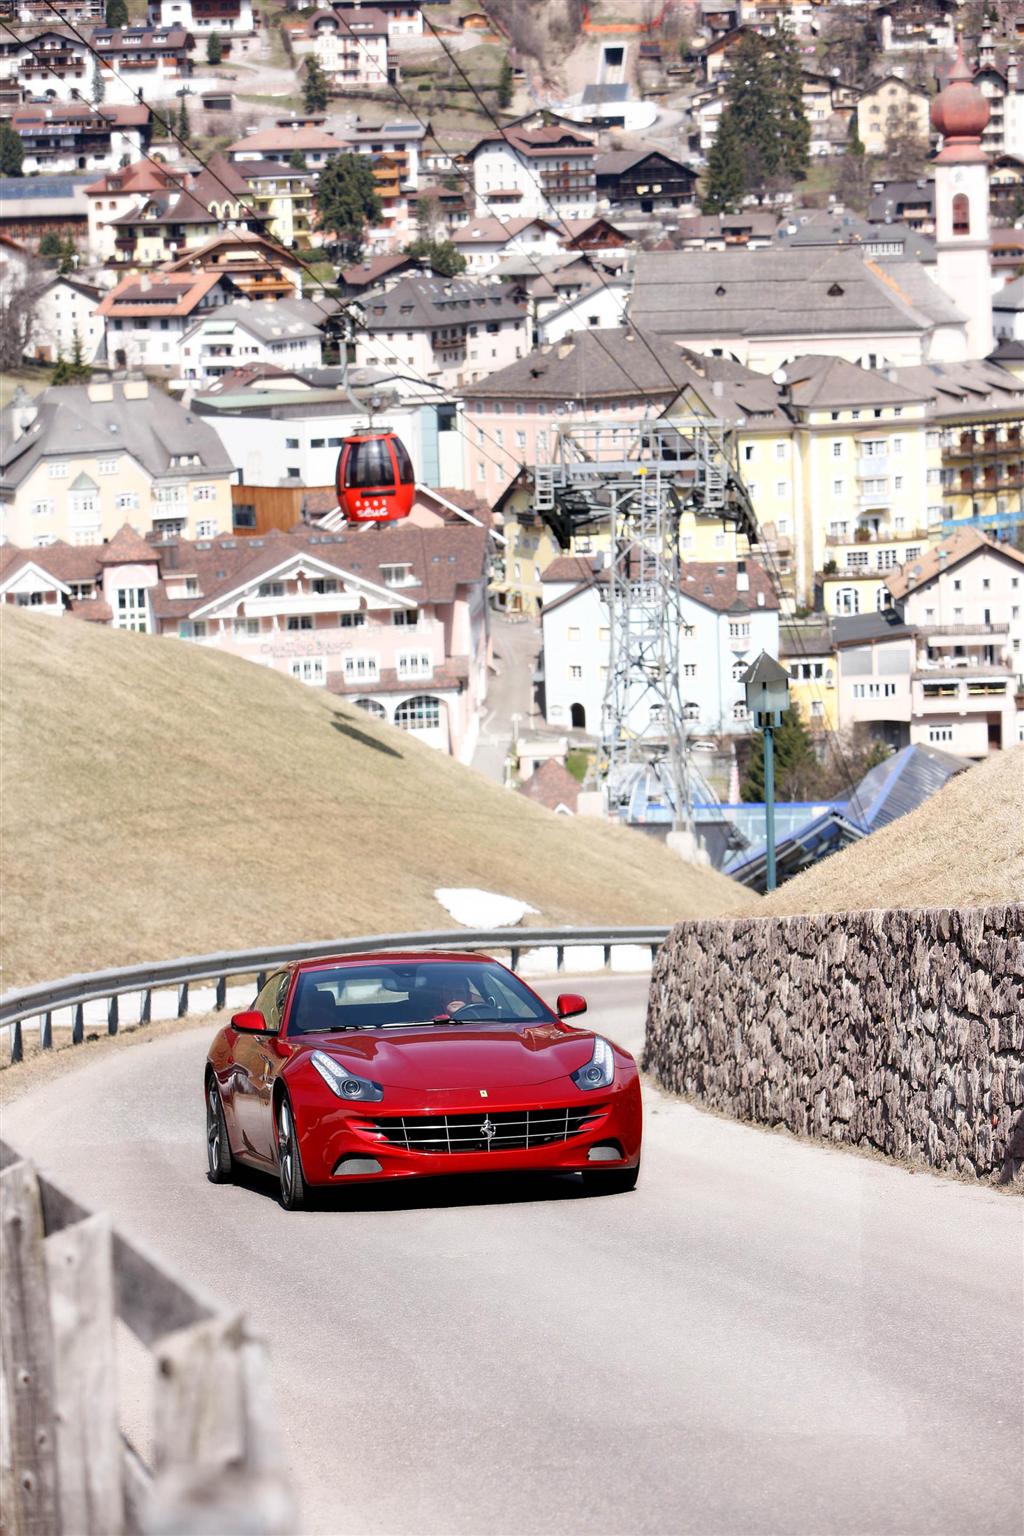 2014 Ferrari FF